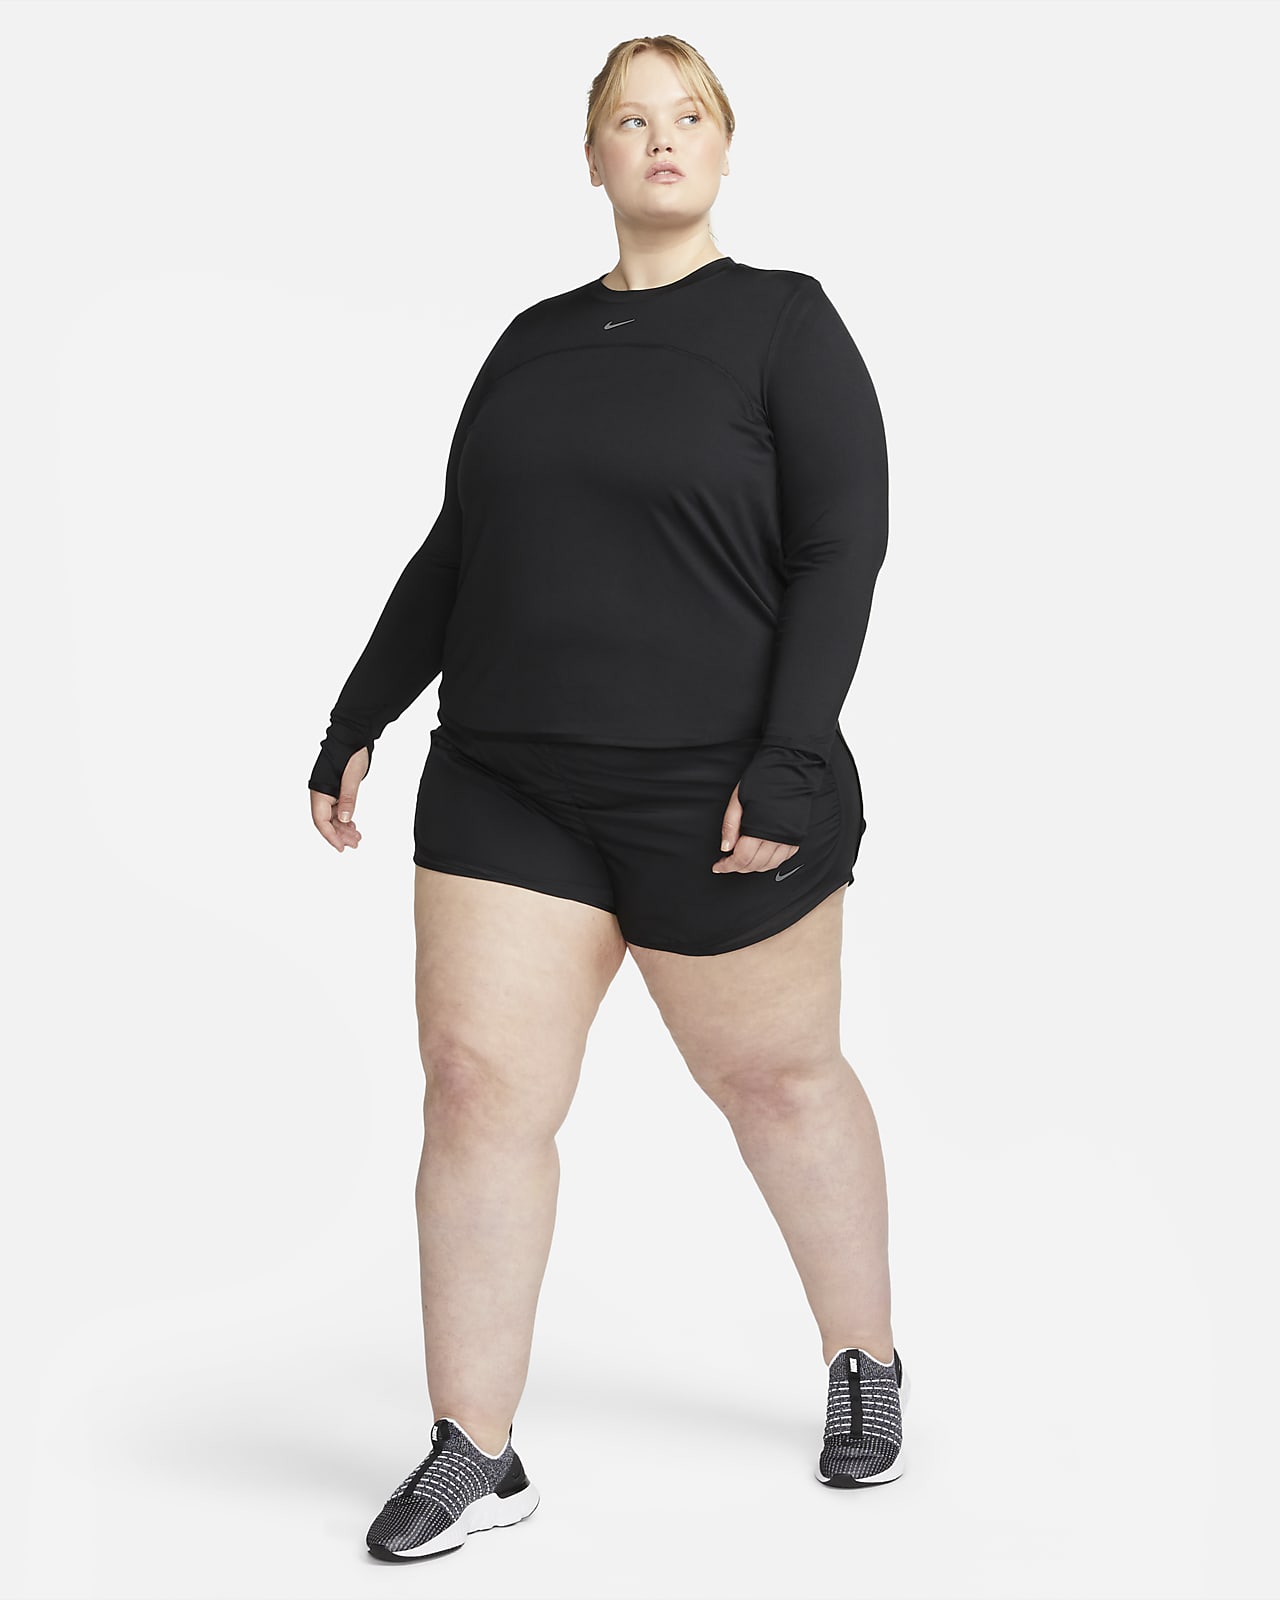 Nike Dri Fit Capri Leggings Black 802961-010 Women's Size XS